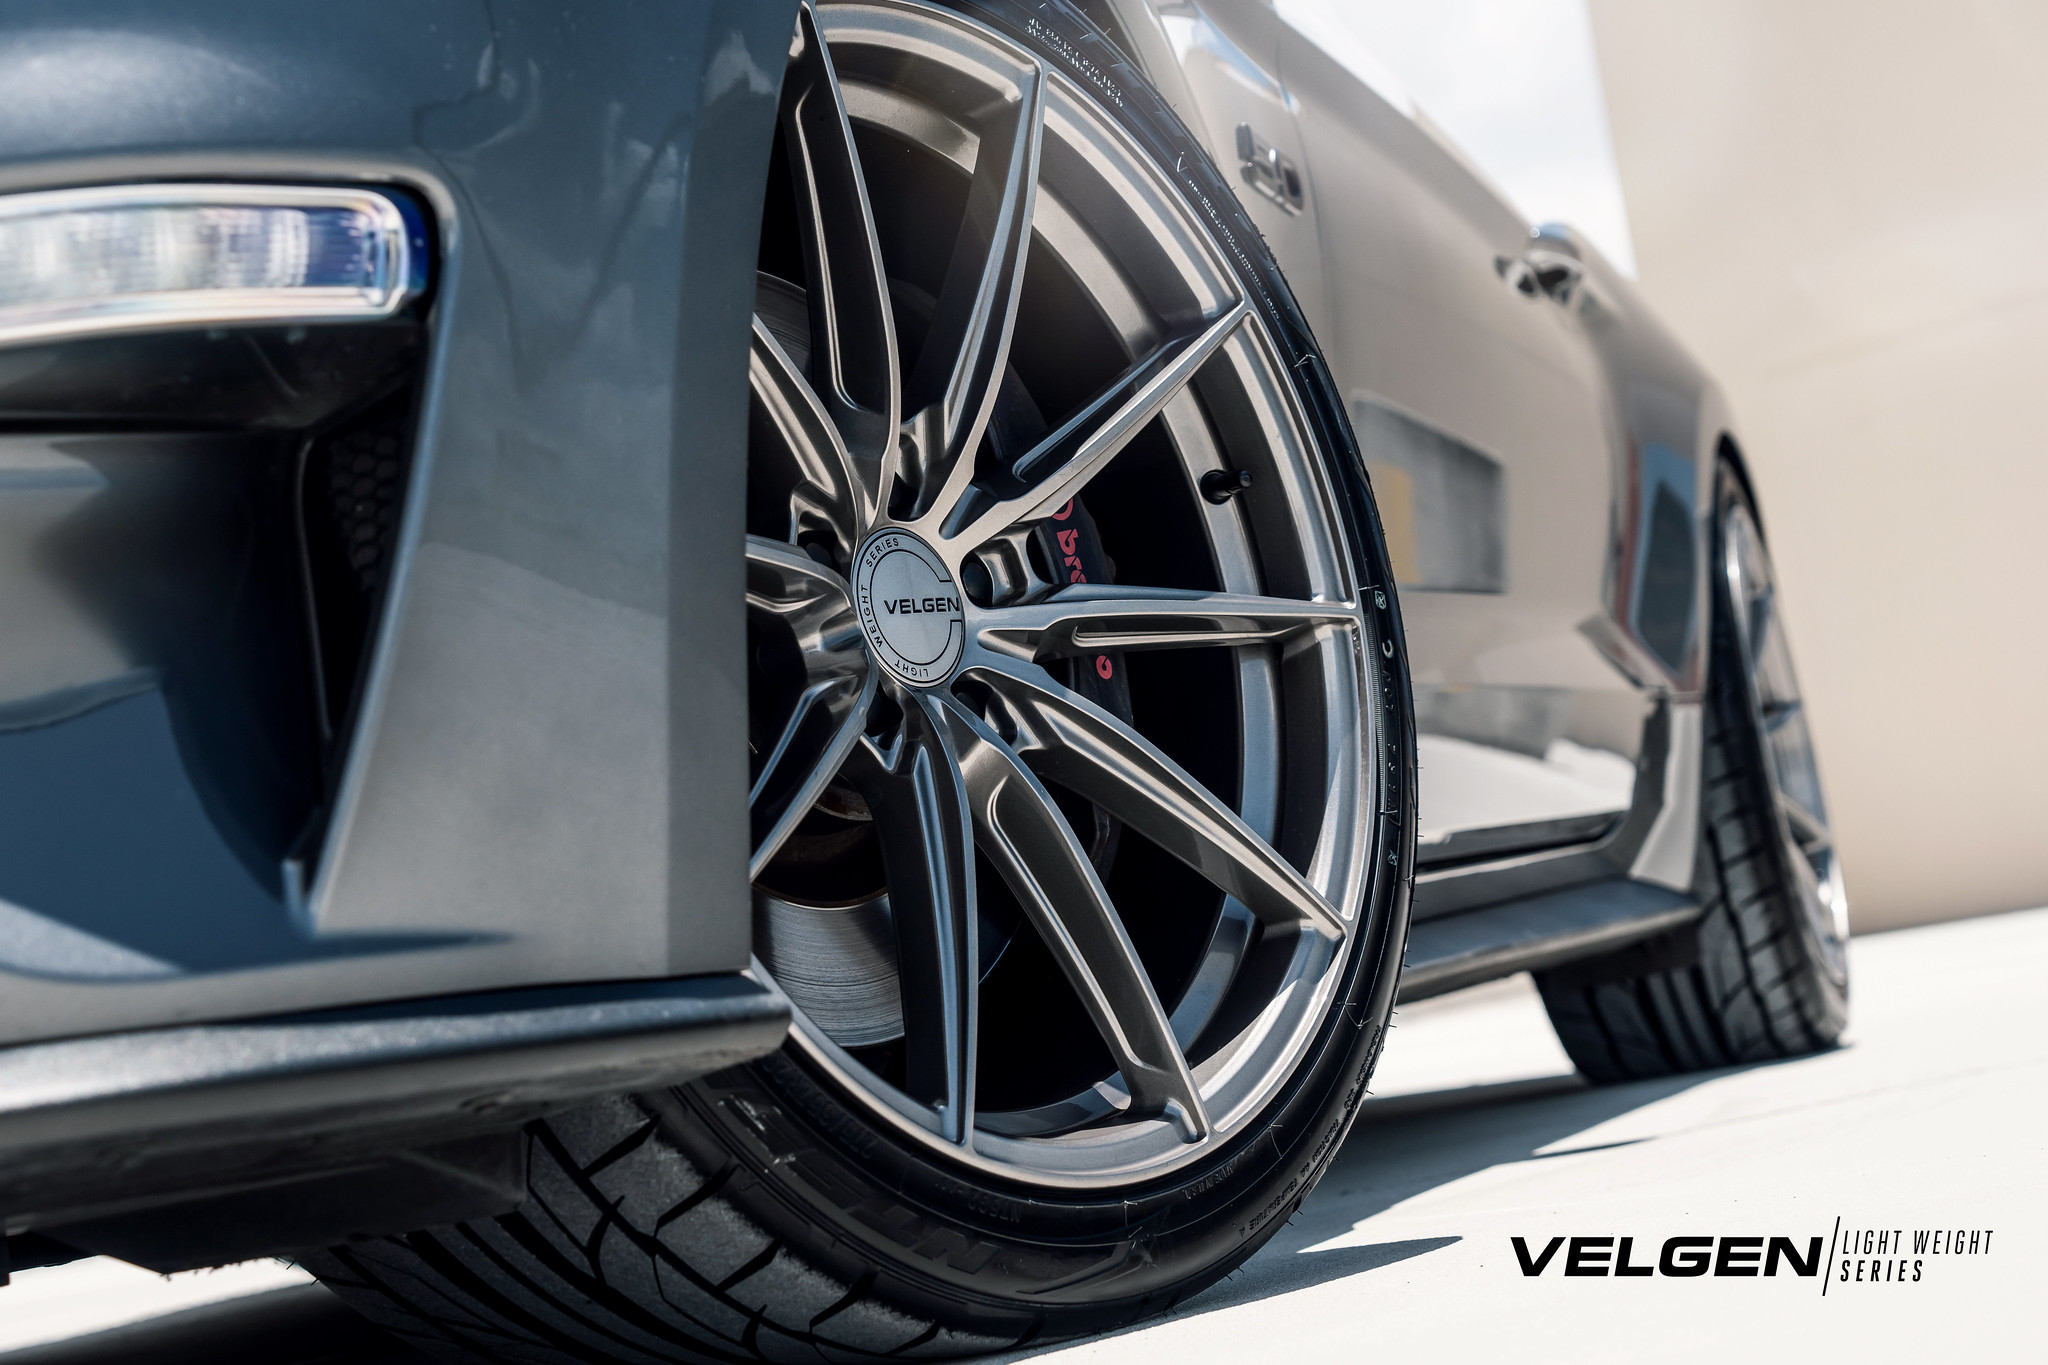 S650 Mustang Velgen wheels for your S650 Mustang | Vibe Motorsports 53055776018_e8284fb1f6_k